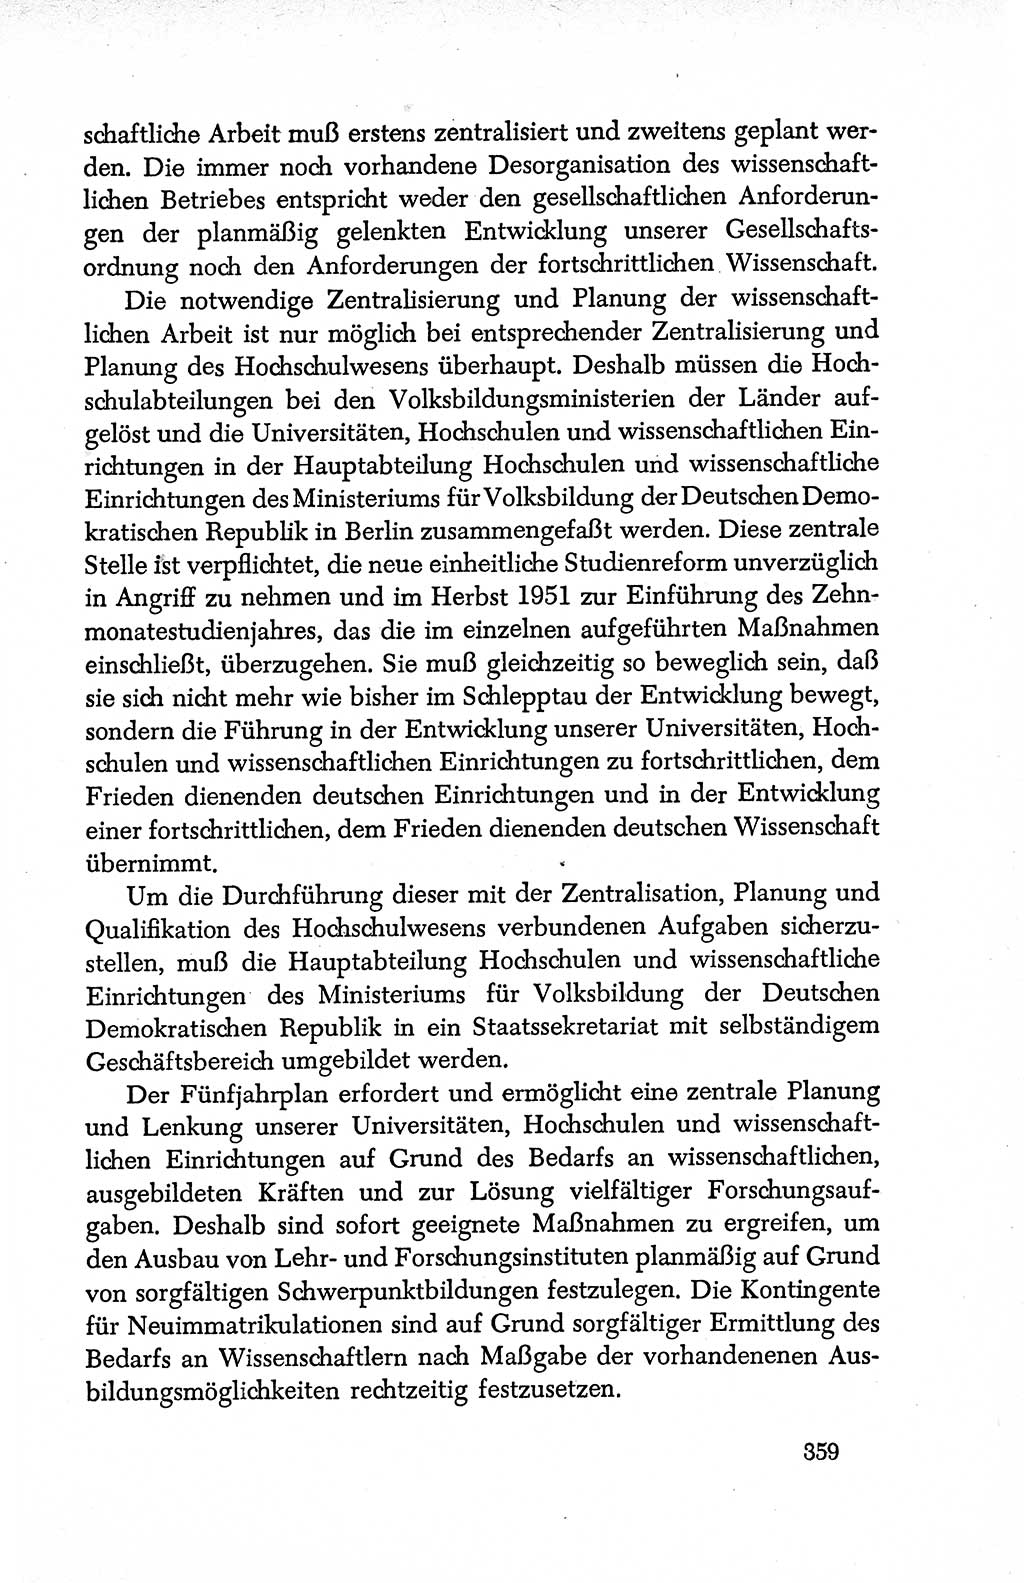 Dokumente der Sozialistischen Einheitspartei Deutschlands (SED) [Deutsche Demokratische Republik (DDR)] 1950-1952, Seite 359 (Dok. SED DDR 1950-1952, S. 359)